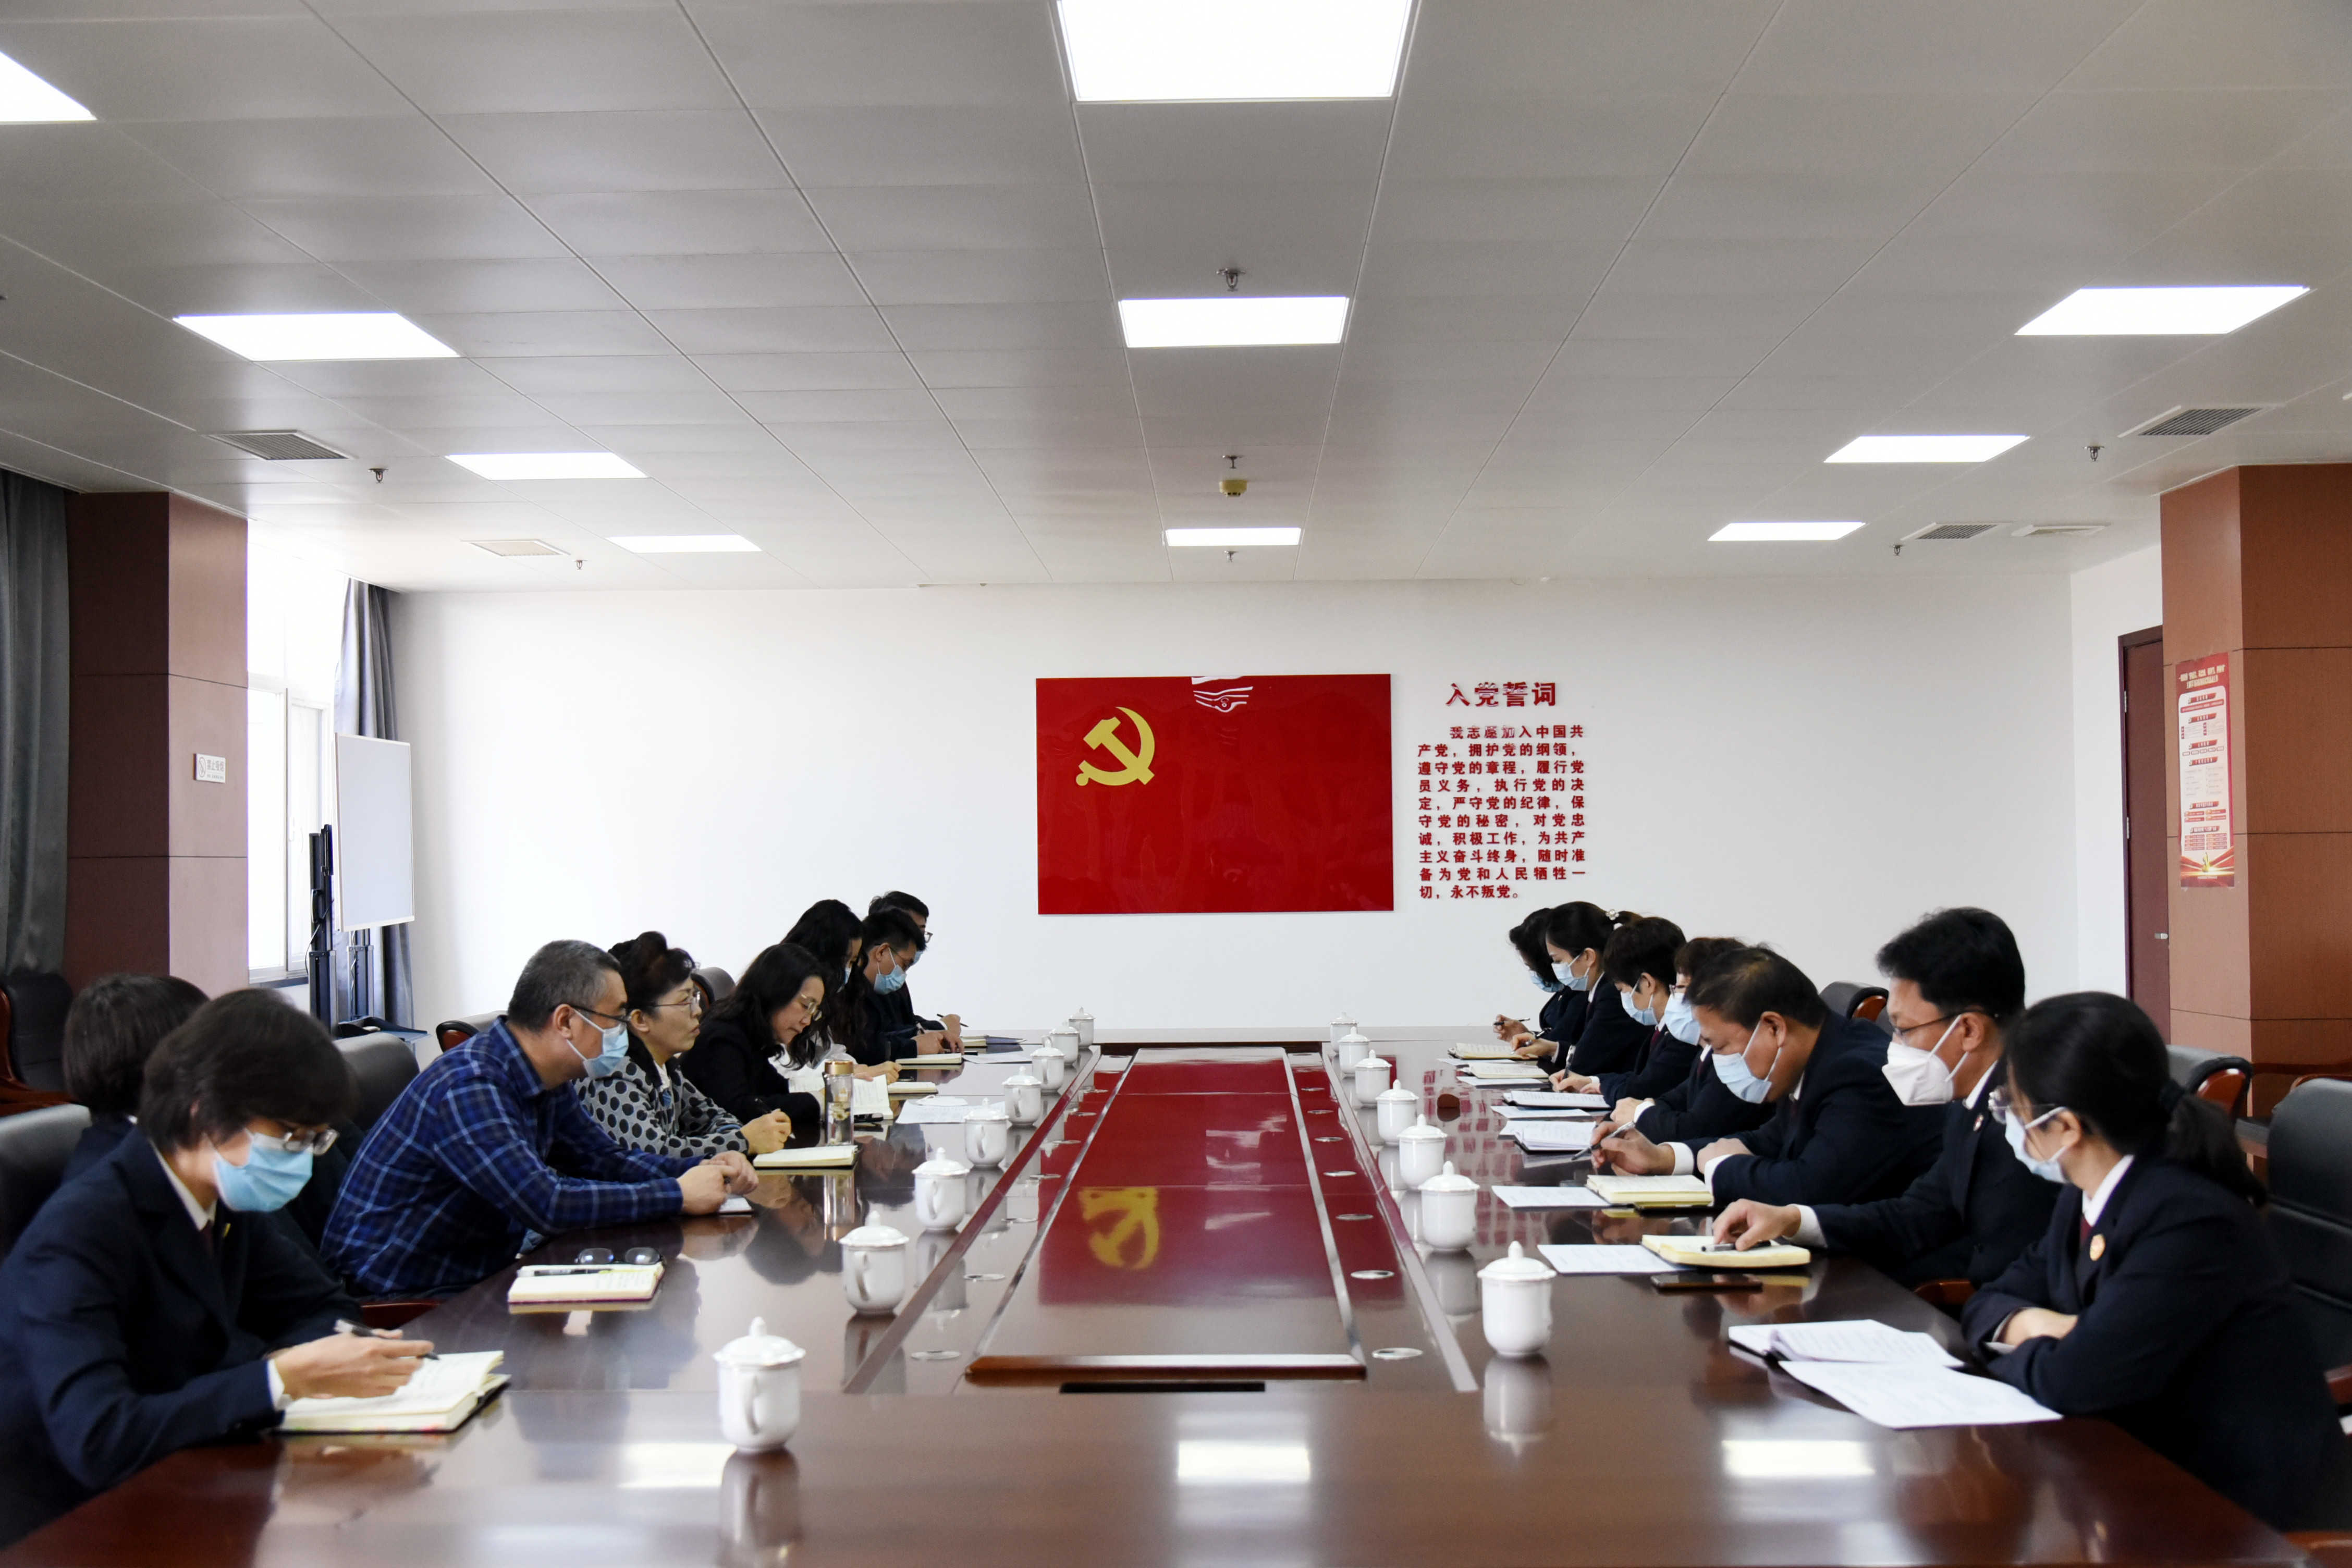 区人大常委会领导一行到北辰区人民检察院调研座谈